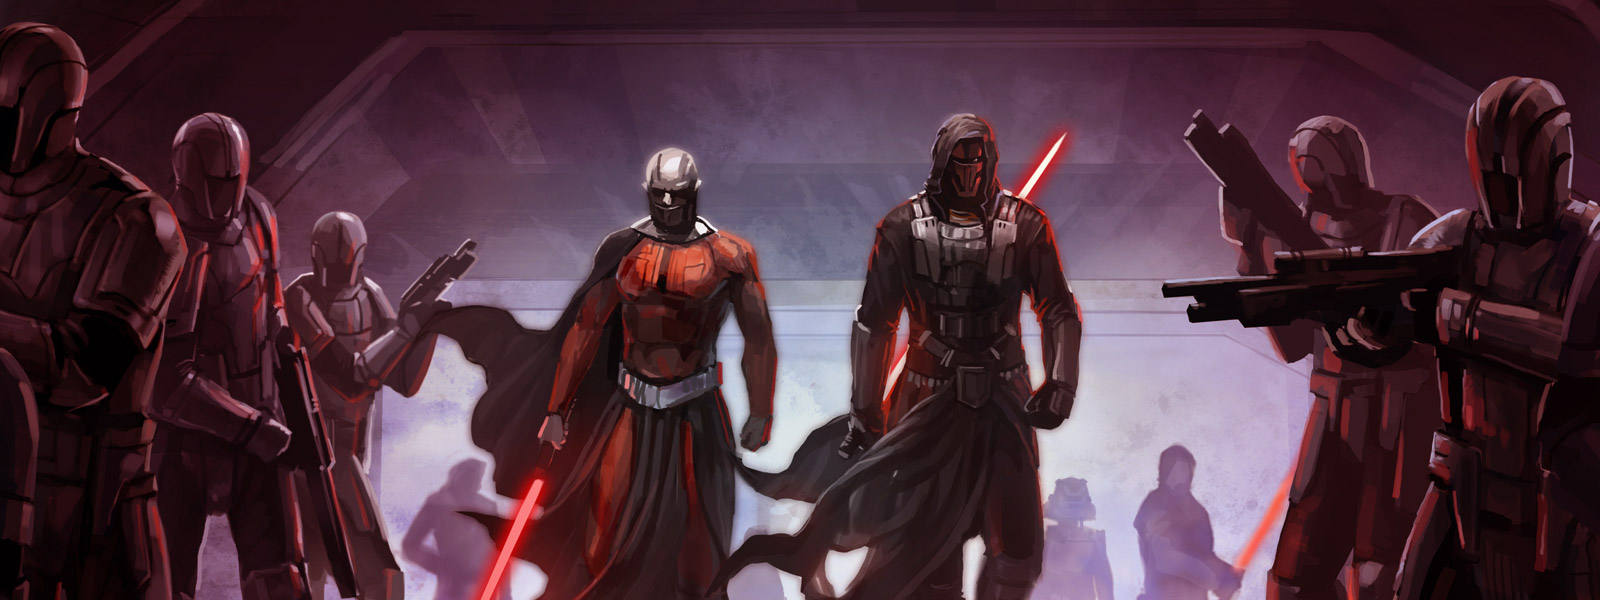 Слух: В разработке находится переиздание Star Wars: Knights of the Old Republic для новых консолей